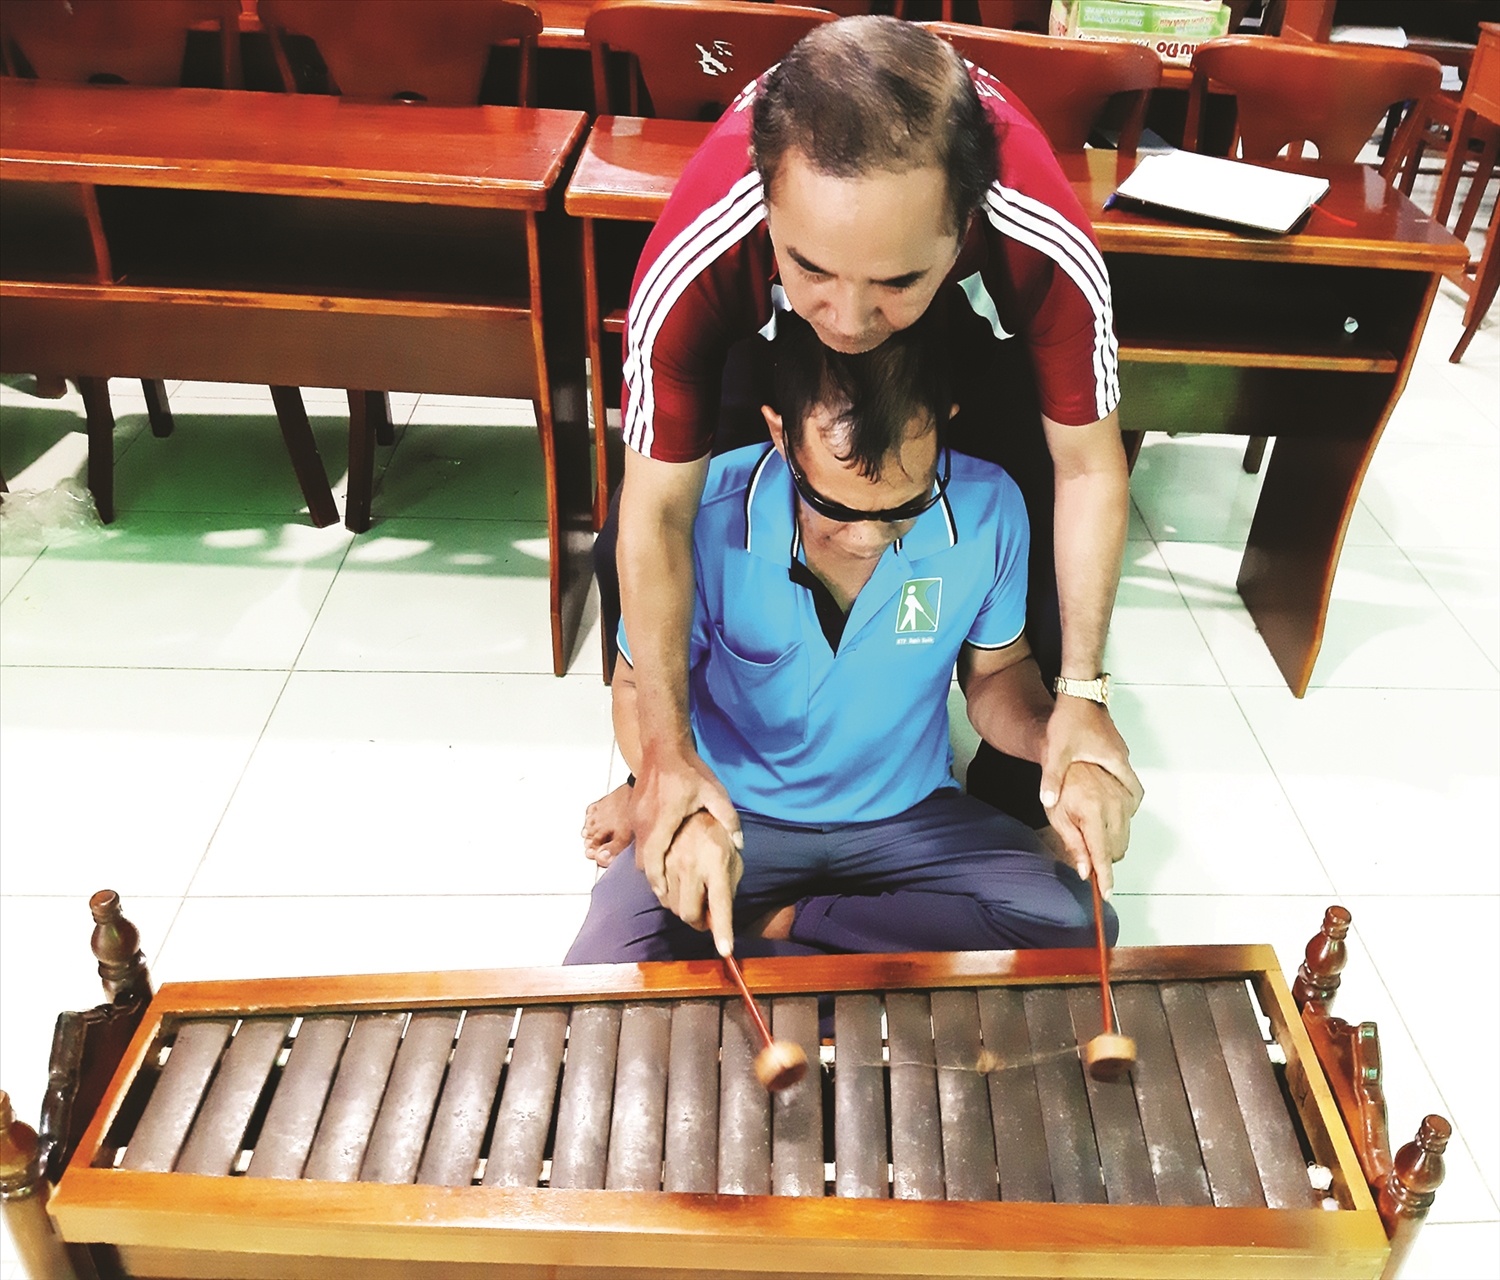 Nghệ nhân Lâm Minh Cường cầm tay chỉ dạy từng nốt nhạc cho học viên khiếm thị tham gia lớp học nhạc ngũ âm.